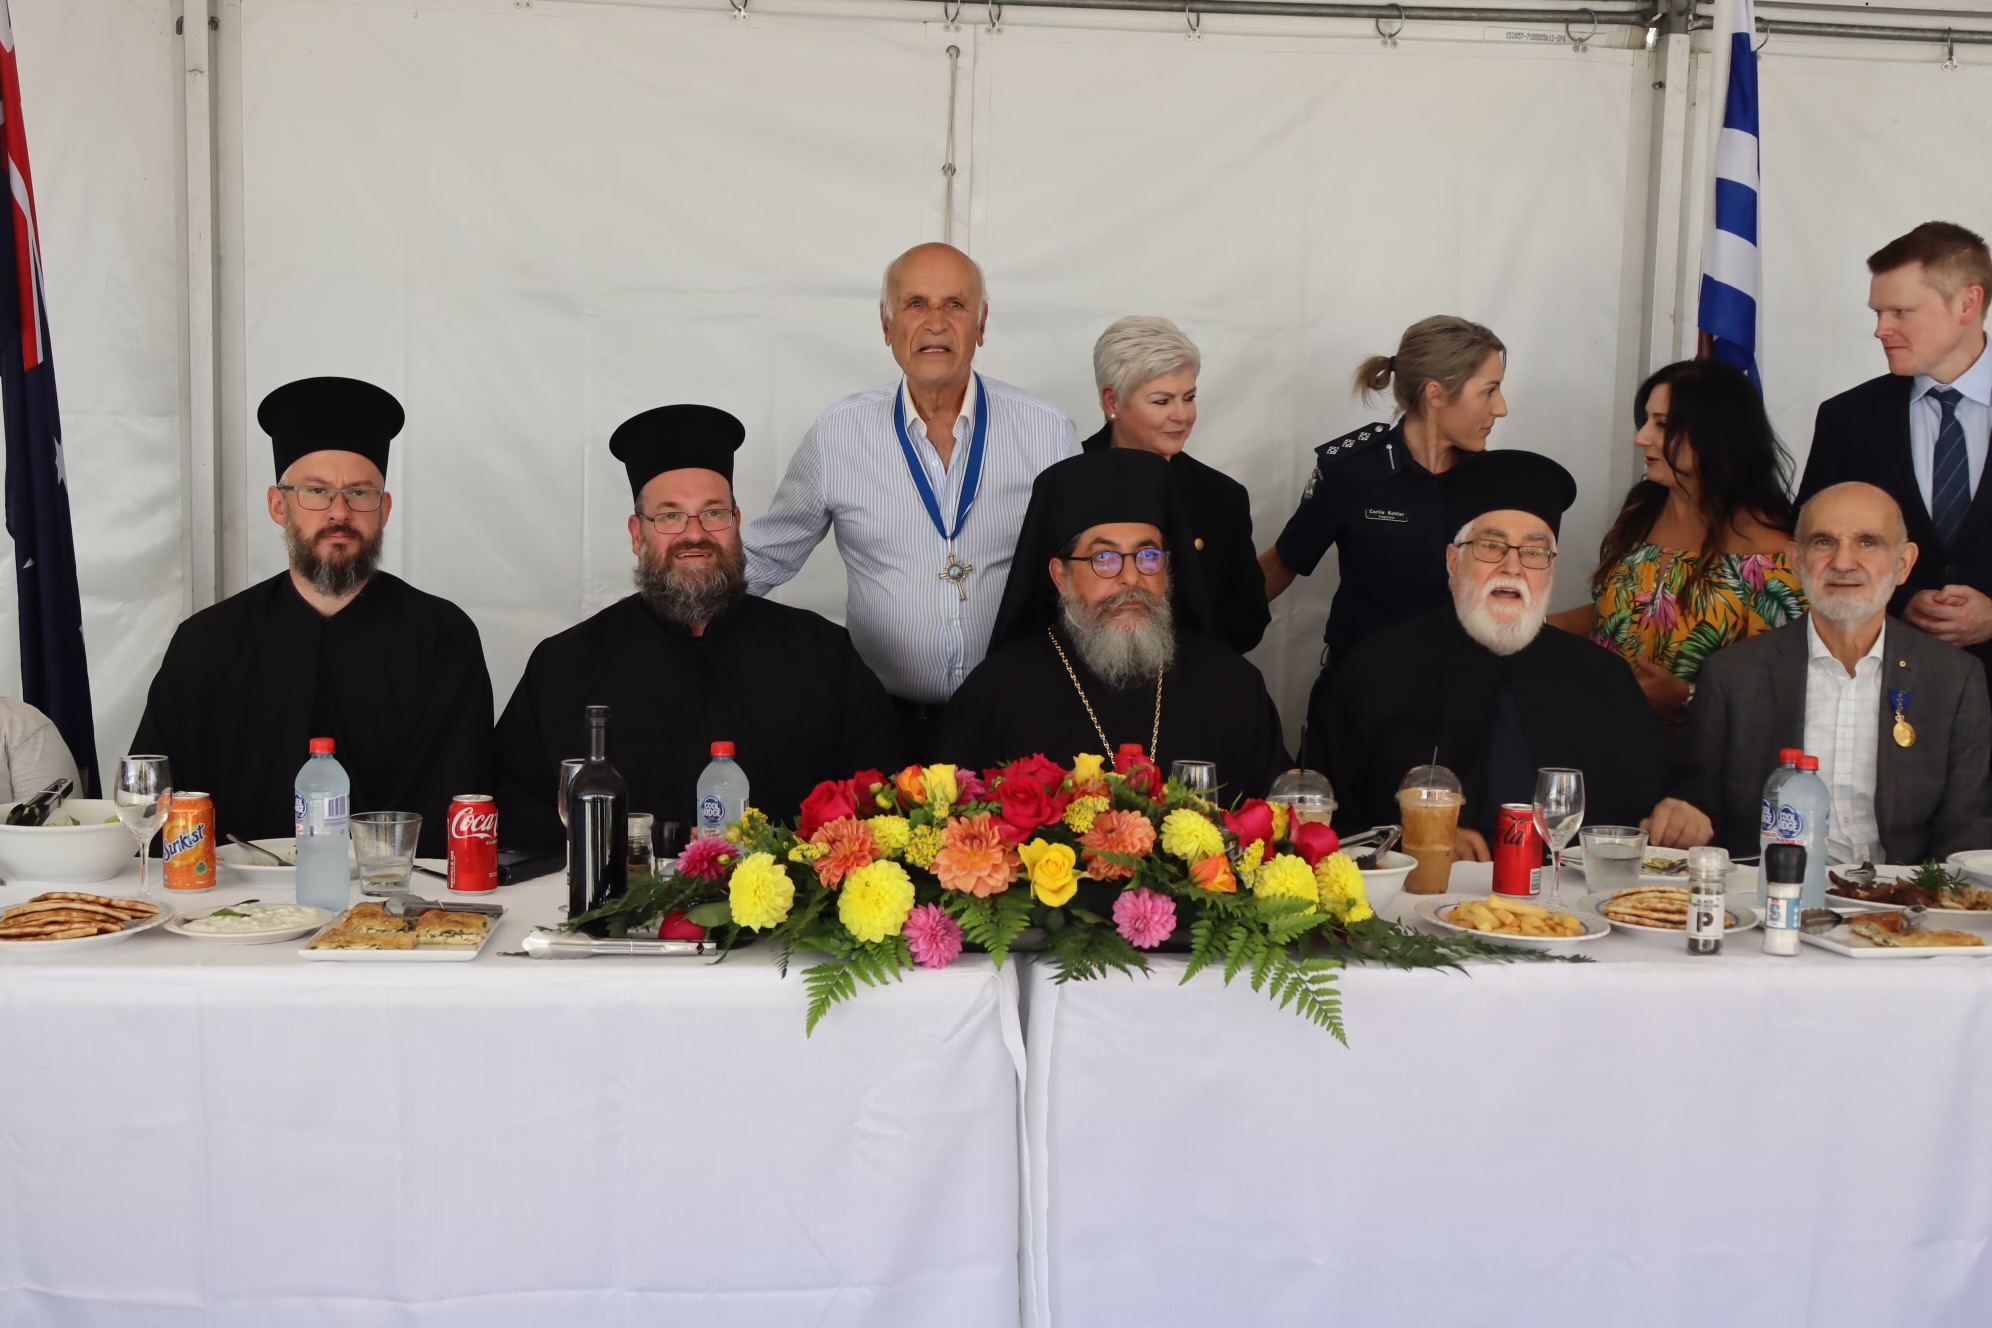 Μελβούρνη: Η κορύφωση των εορτασμών στην Ενορία Αγίου Χαραλάμπους Templestowe